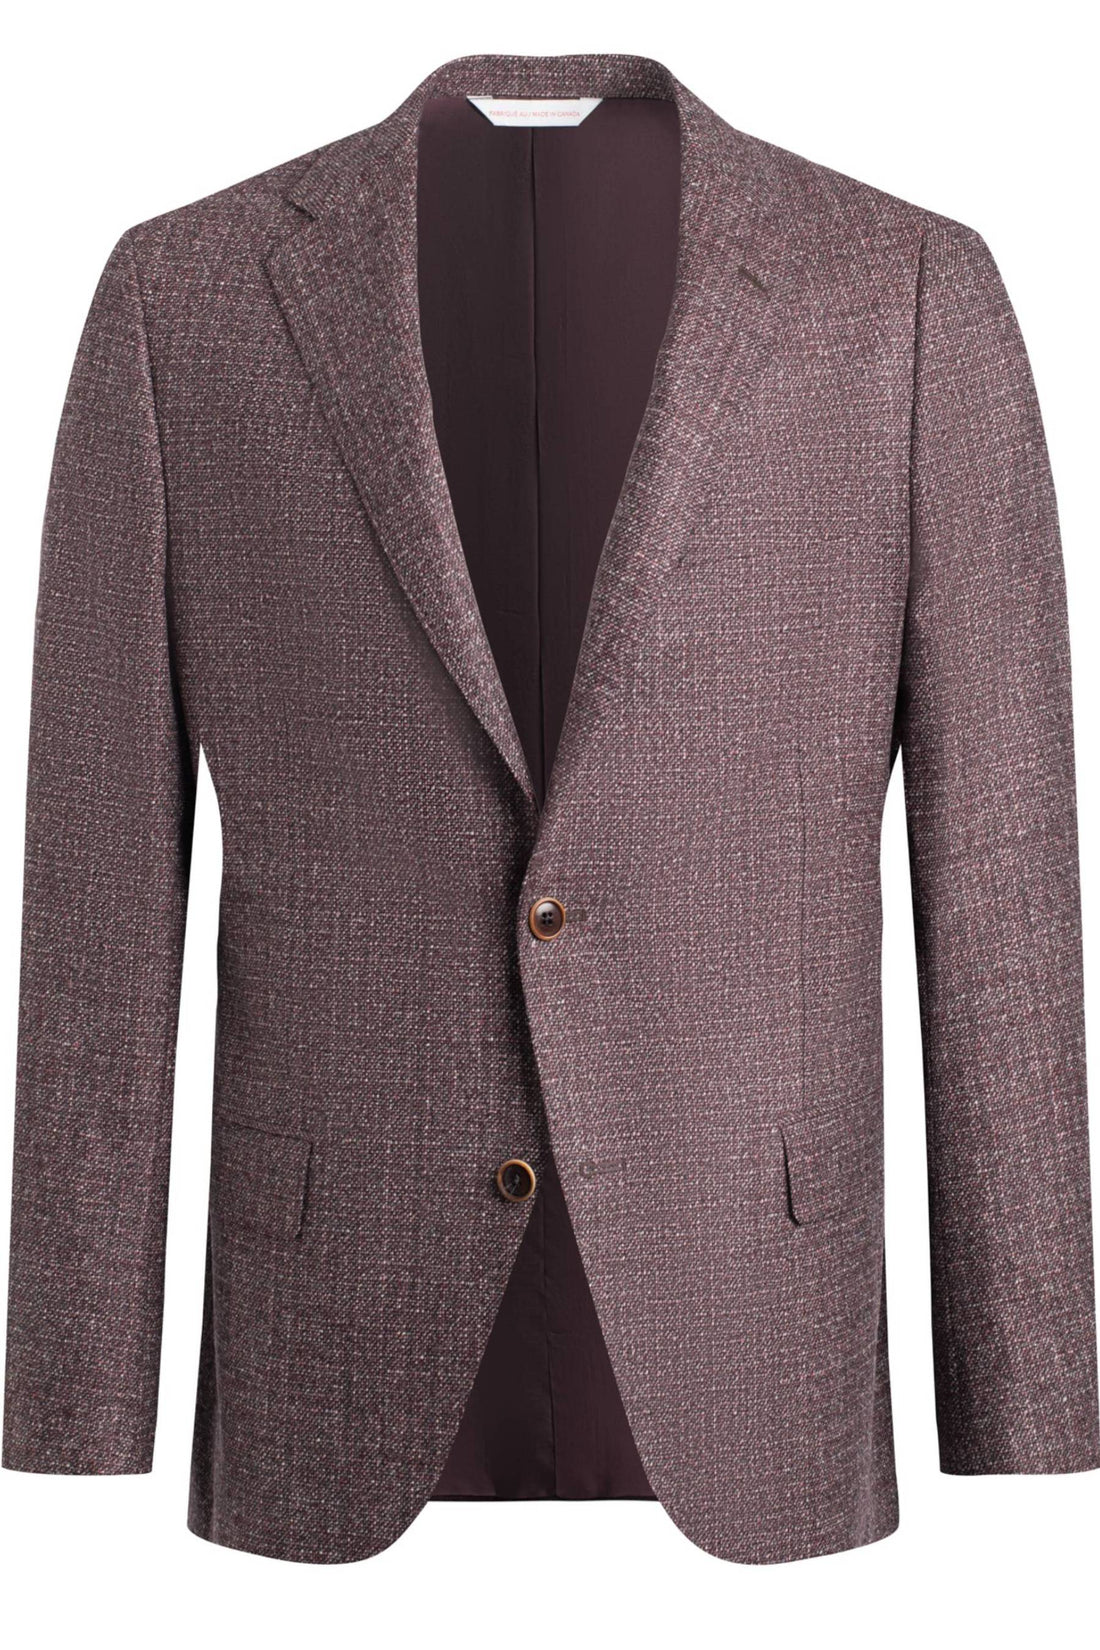 Samuelsohn Burgundy Tweed Jacket front